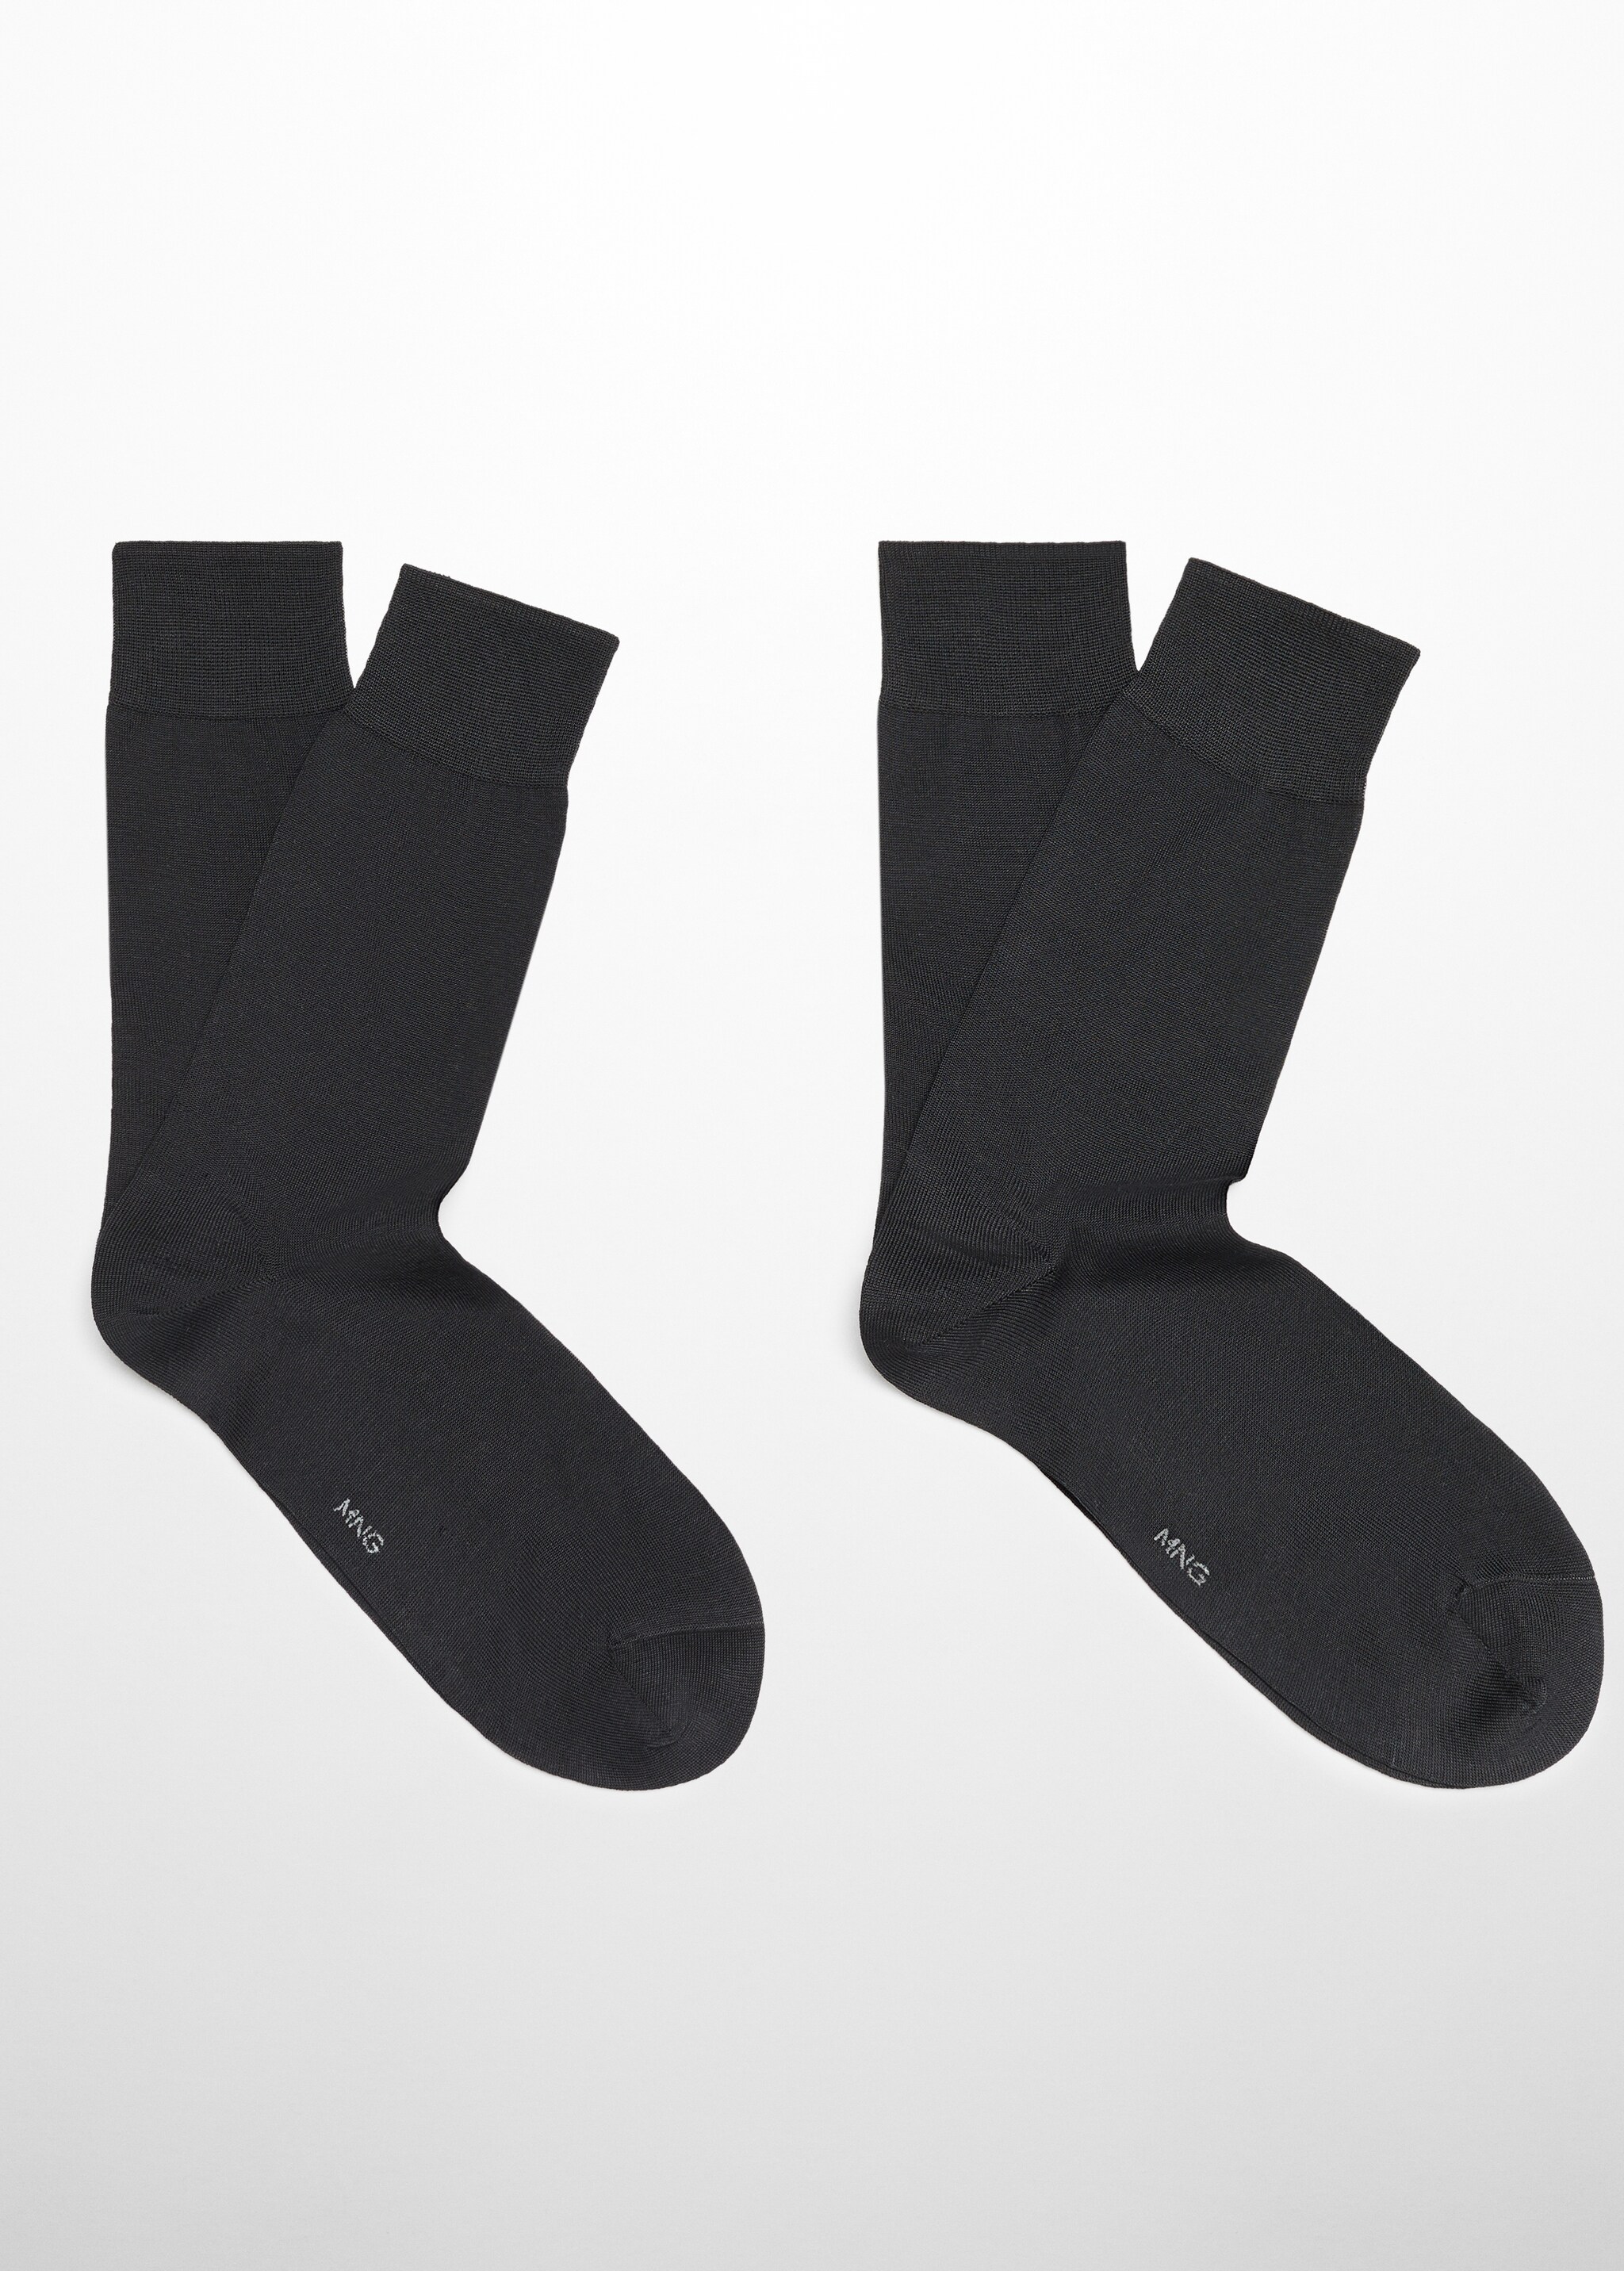 Базовые носки из хлопка  - Изделие без модели